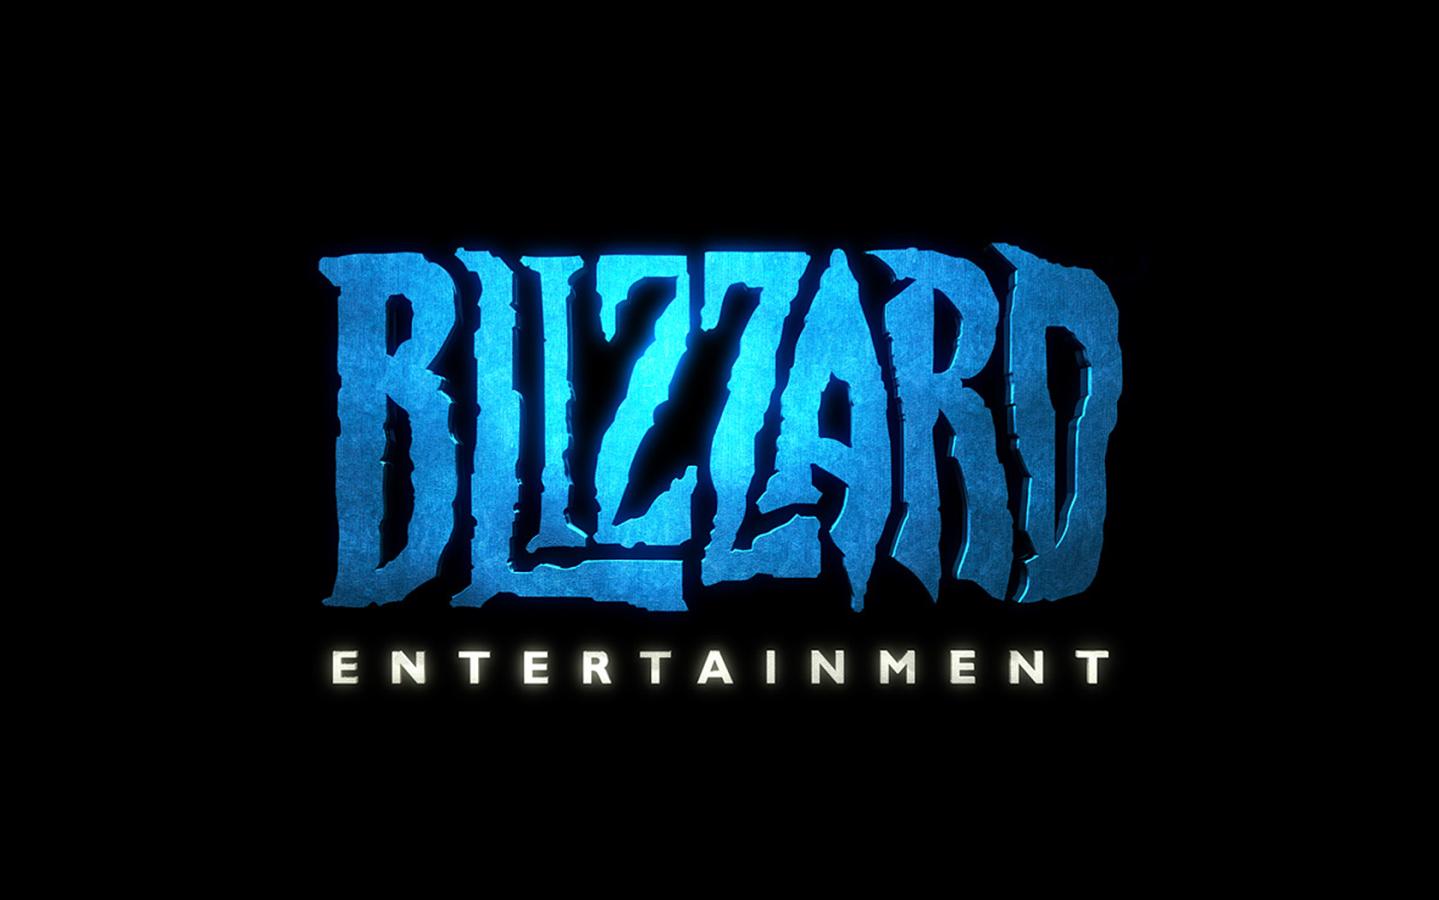 ถ้าคุณทำงานที่ Blizzard ครบ 5 ปีคุณจะได้รับดาบ 1 ea